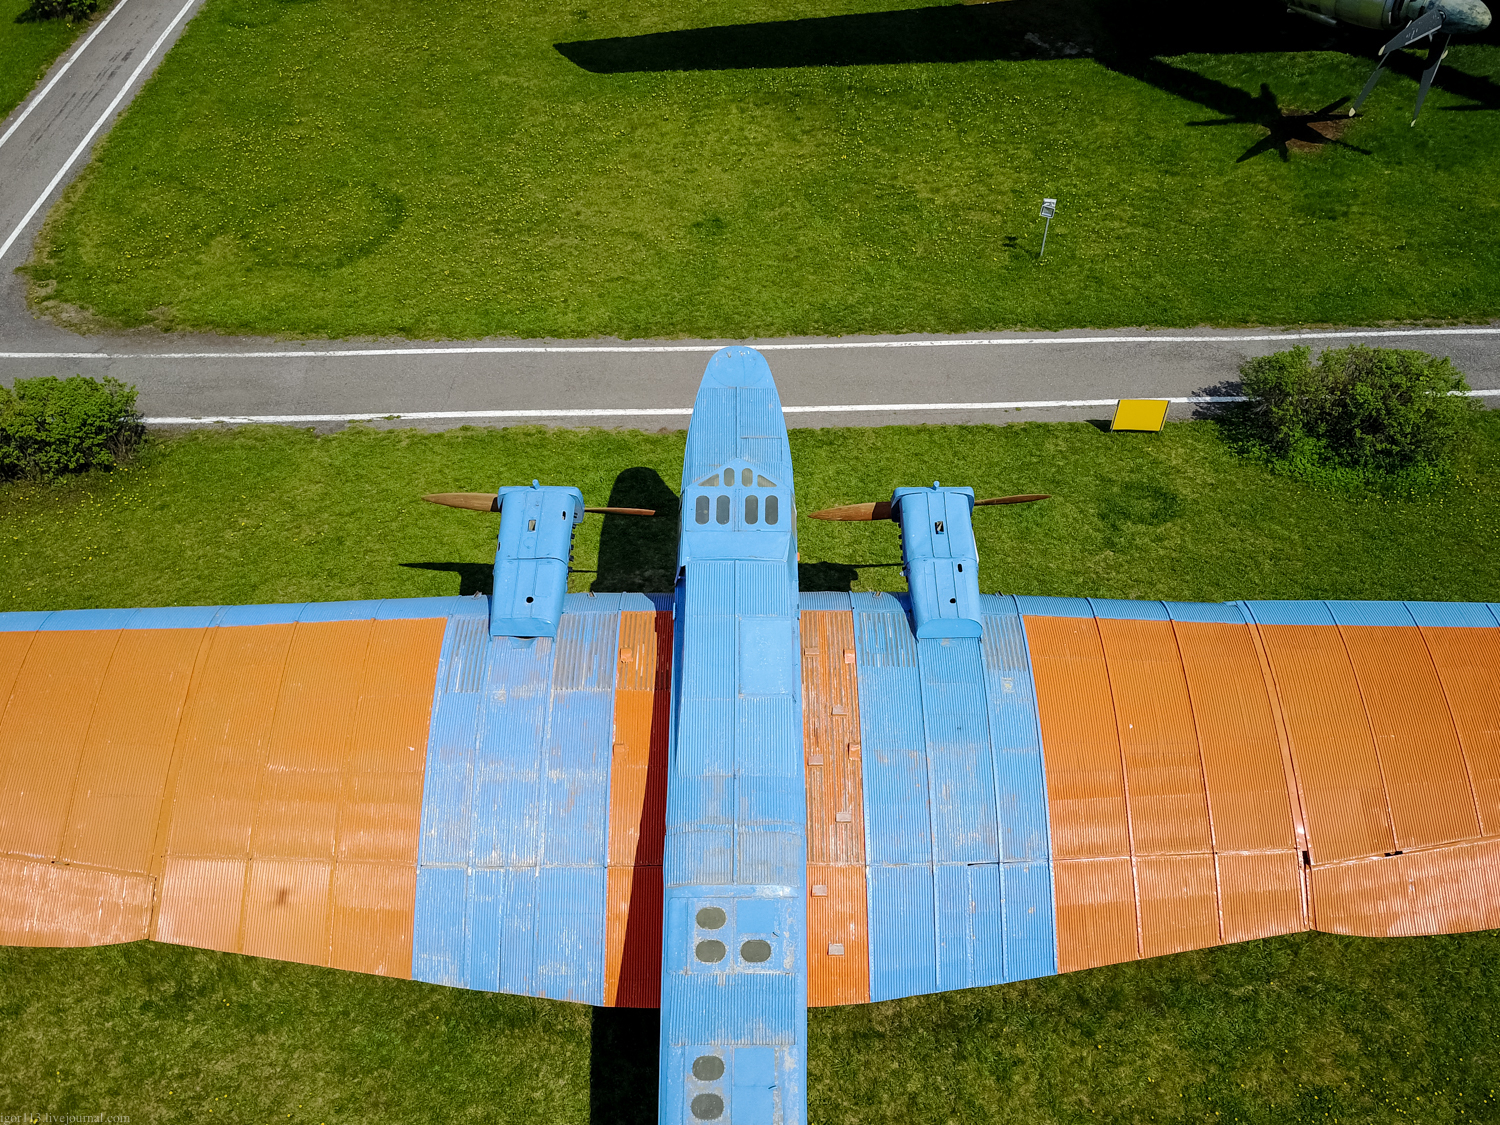 Ульяновский музей Гражданской авиации : цельнометаллический бомбардировщик 